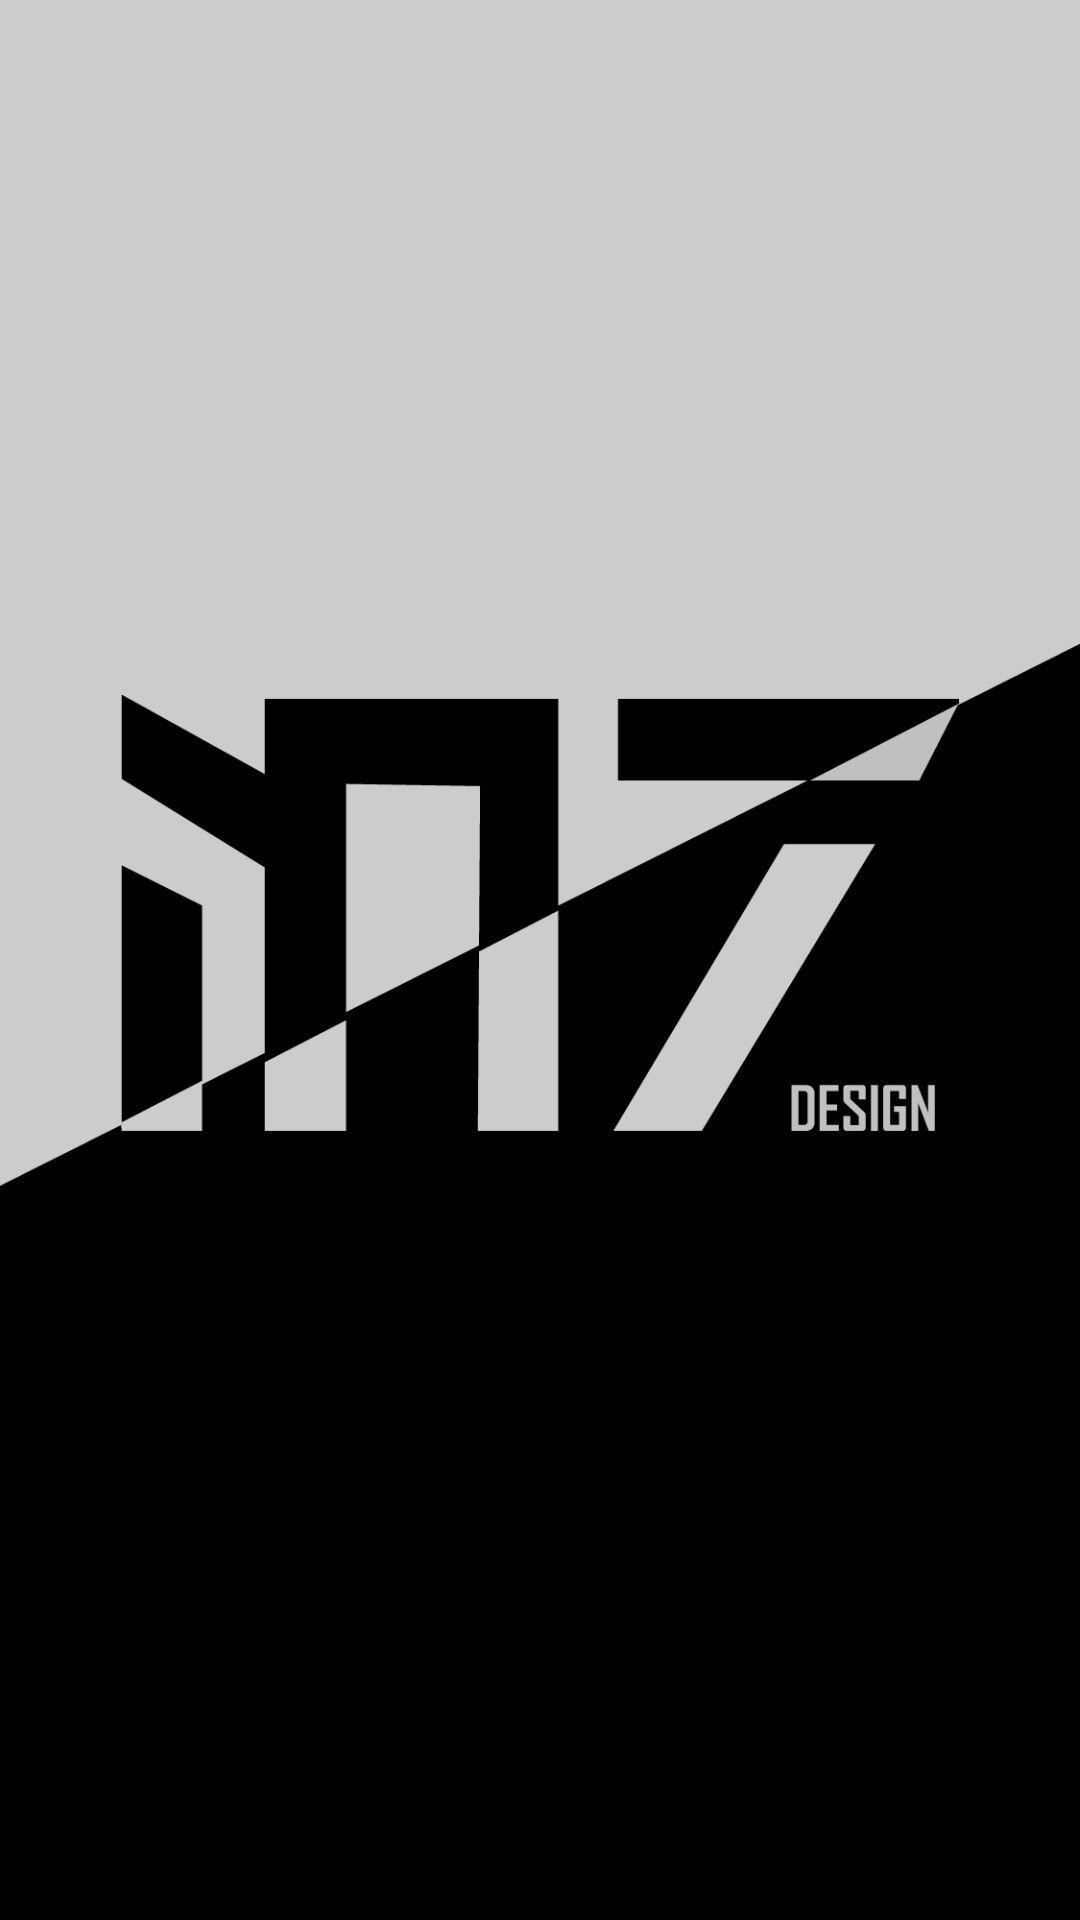 M7 Logo - Latest M7 Design logo. M7 Design. Logos design, Company logo, Logos